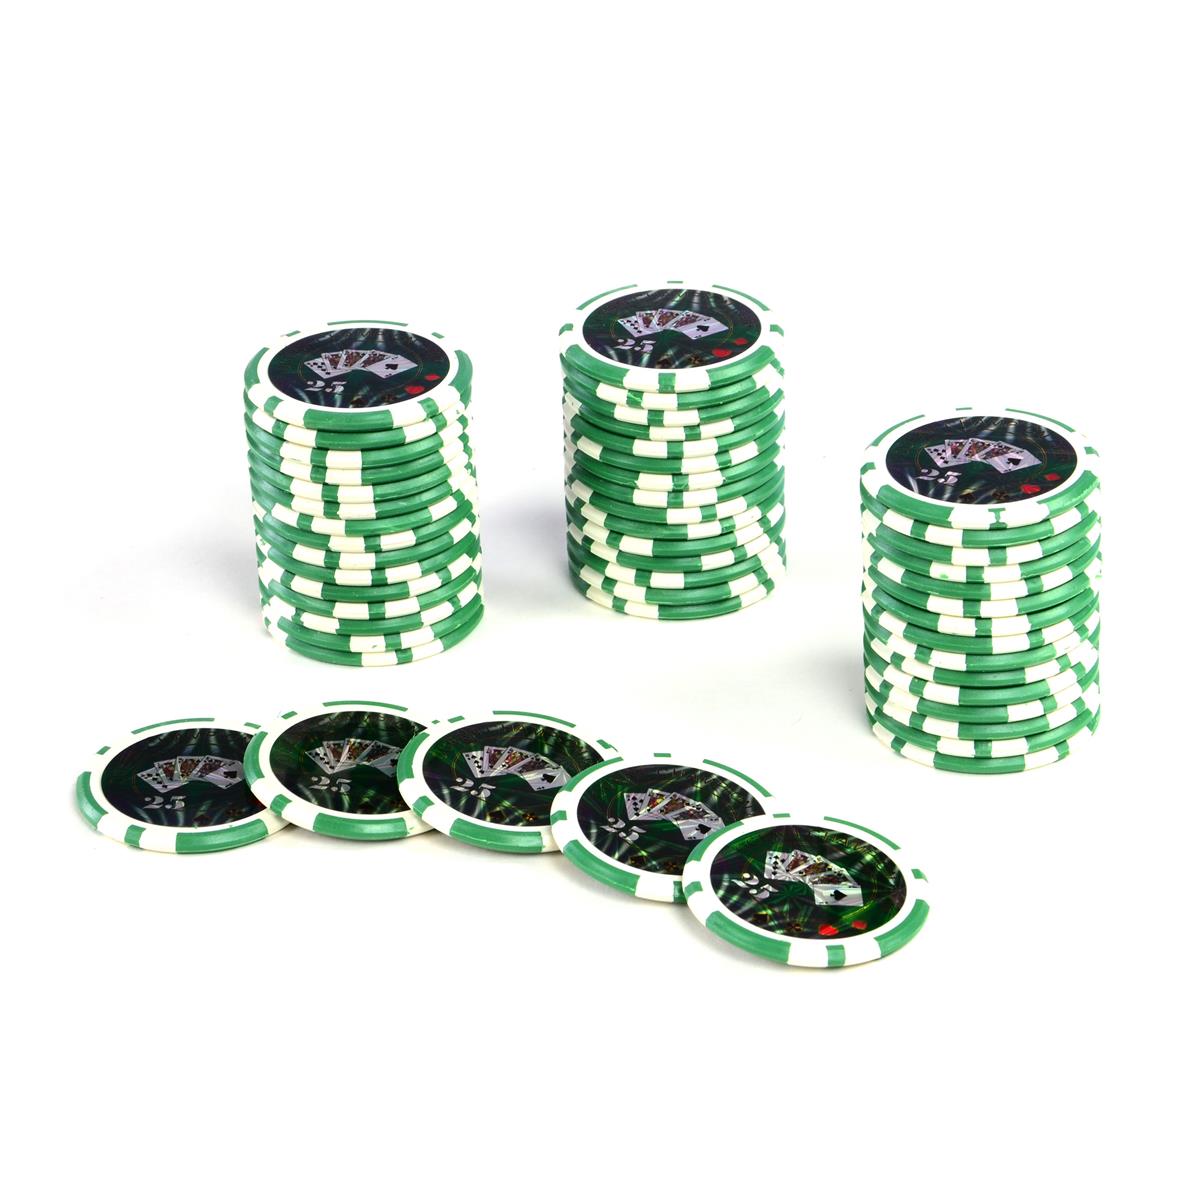 50 Poker-Chips Wert 25 Laserchip 12g Metallkern OCEAN-CHAMPION-CHIP abgerundet